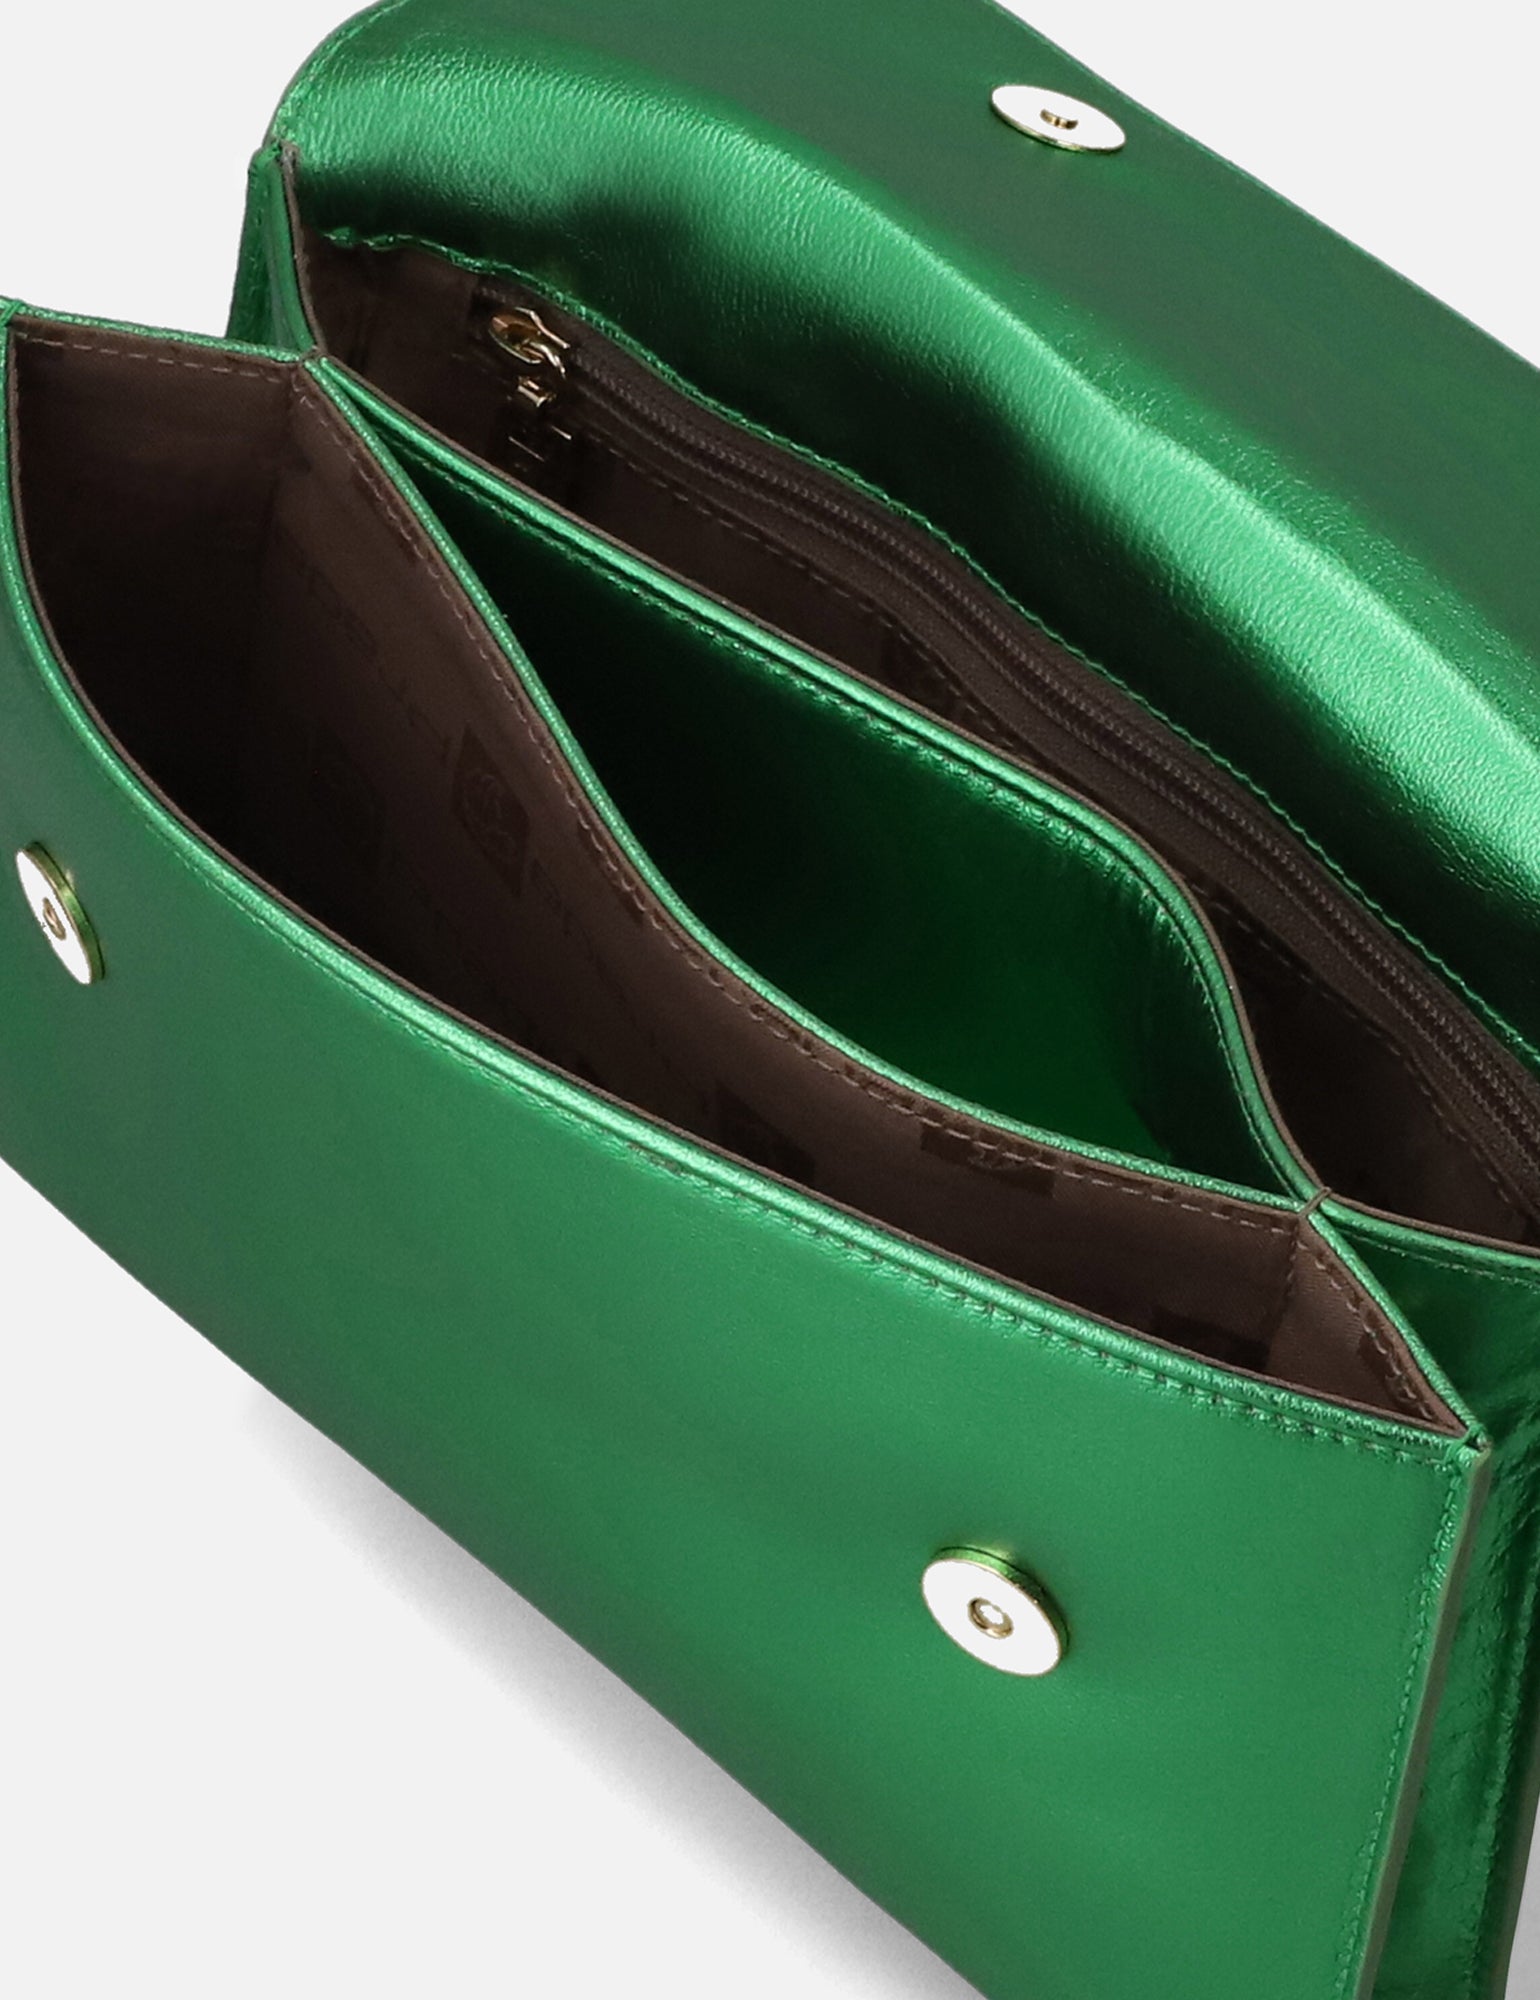 Bolso clutch en piel metalizada color verde